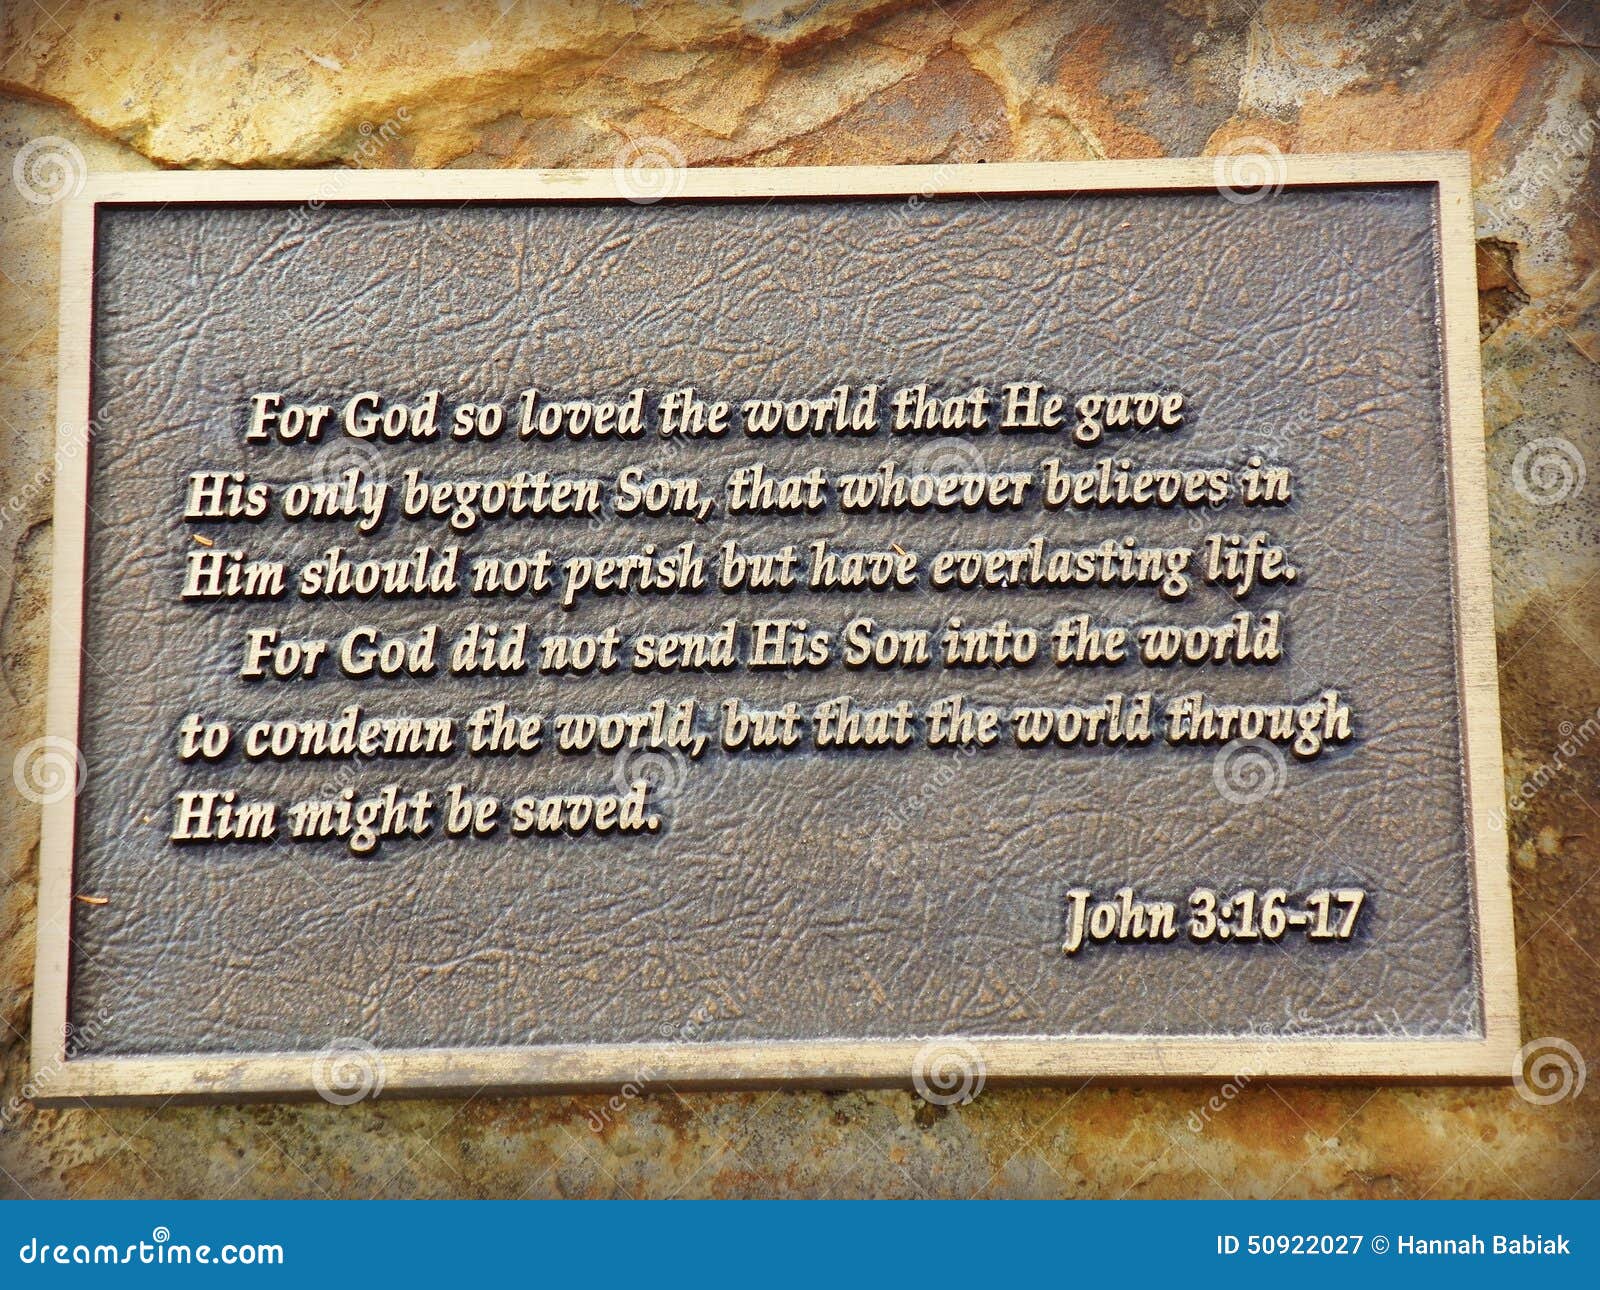 john 3:16-17